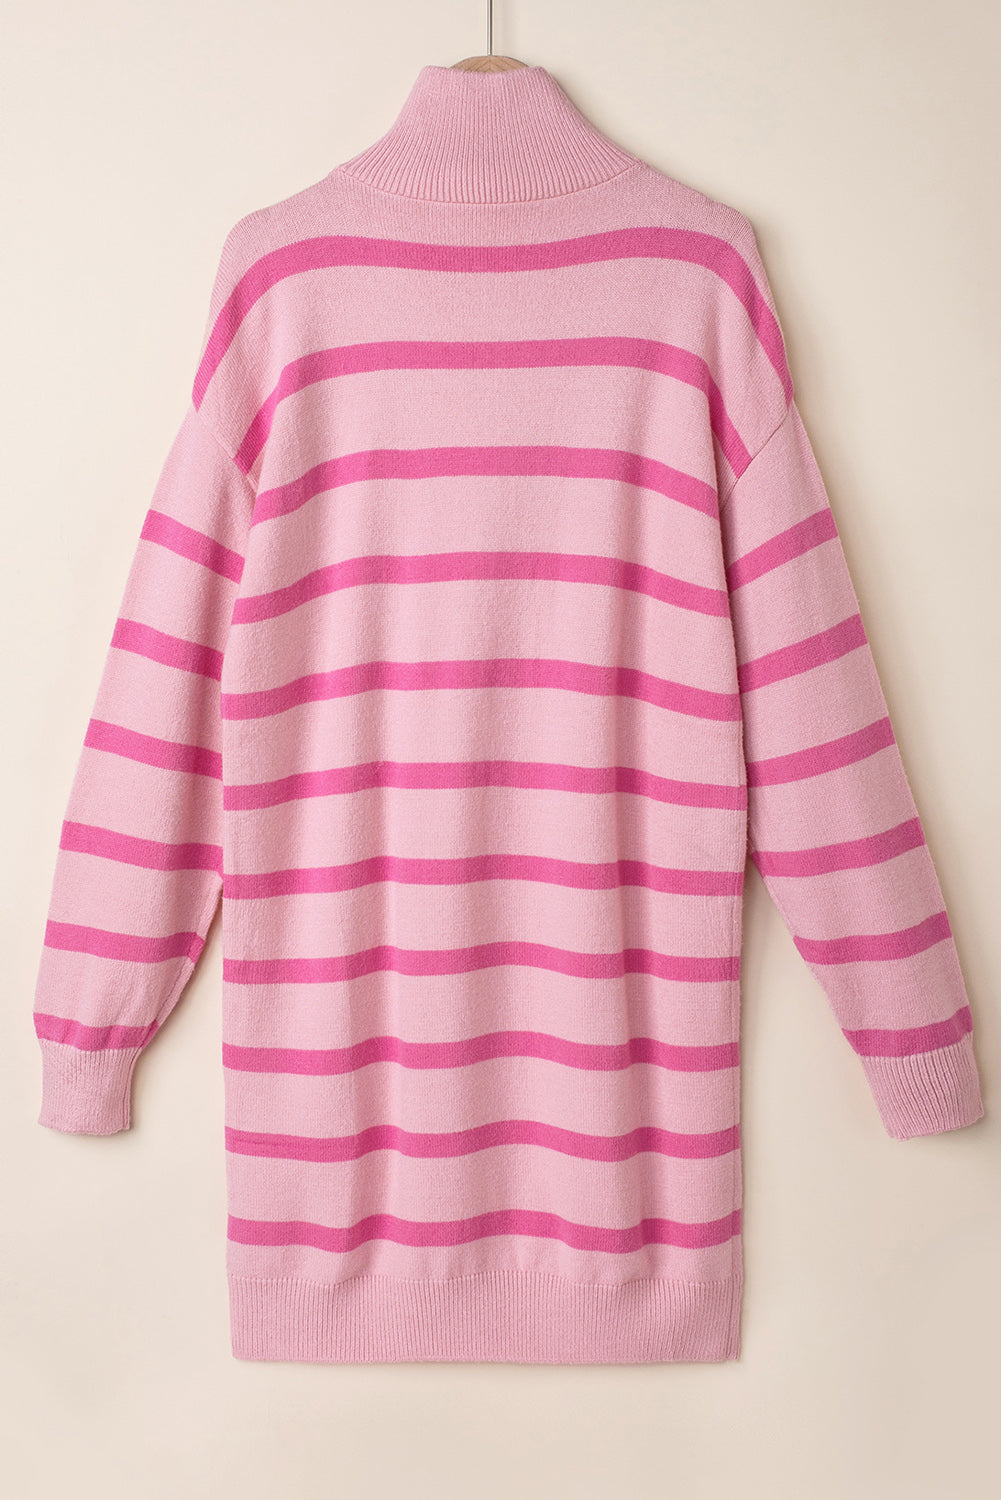 Clarkia Sweater Dress